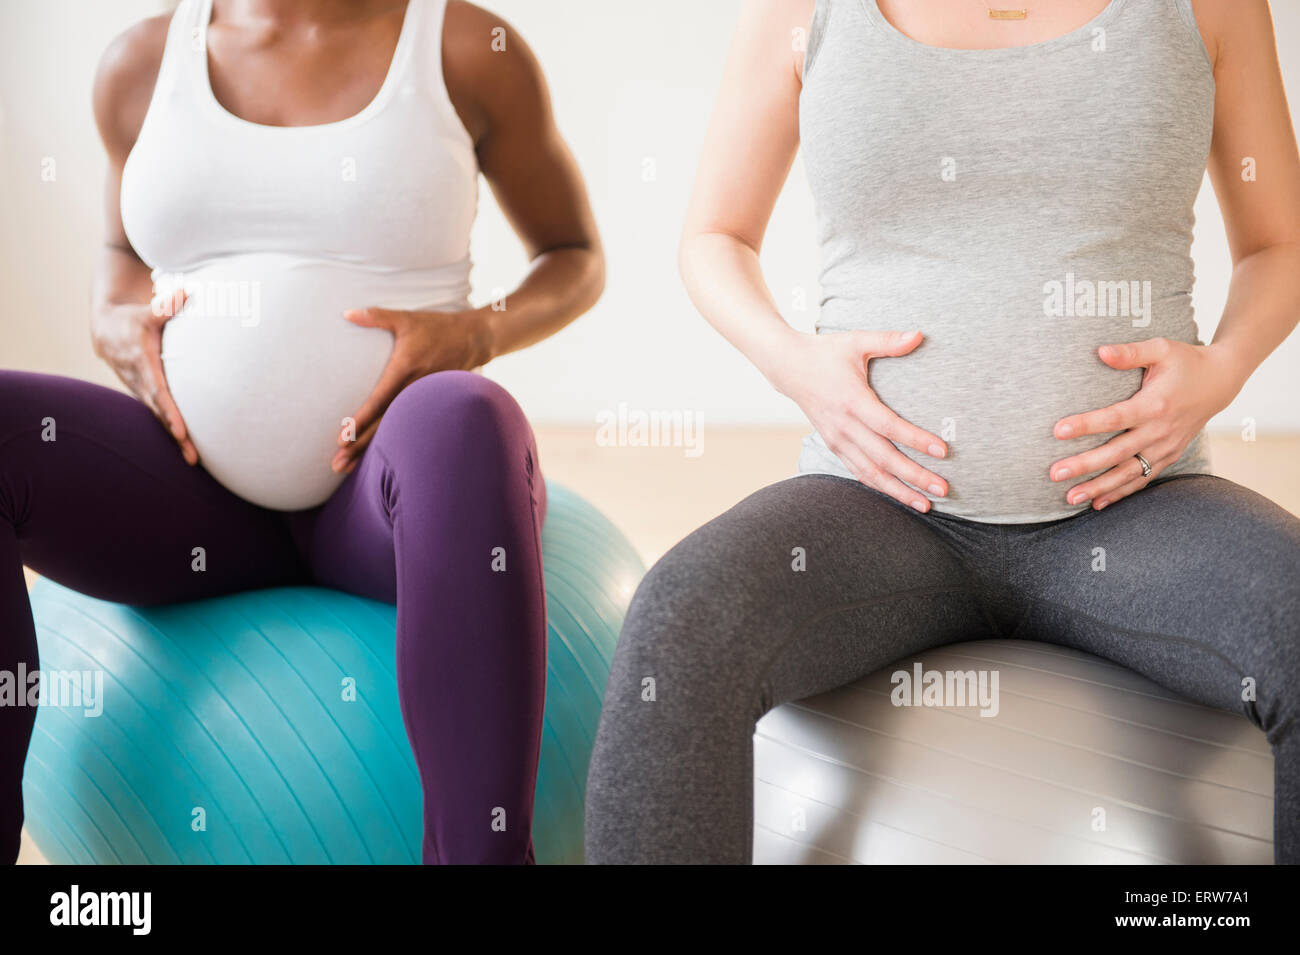 Les femmes enceintes holding estomacs assis sur des boules de forme physique Banque D'Images